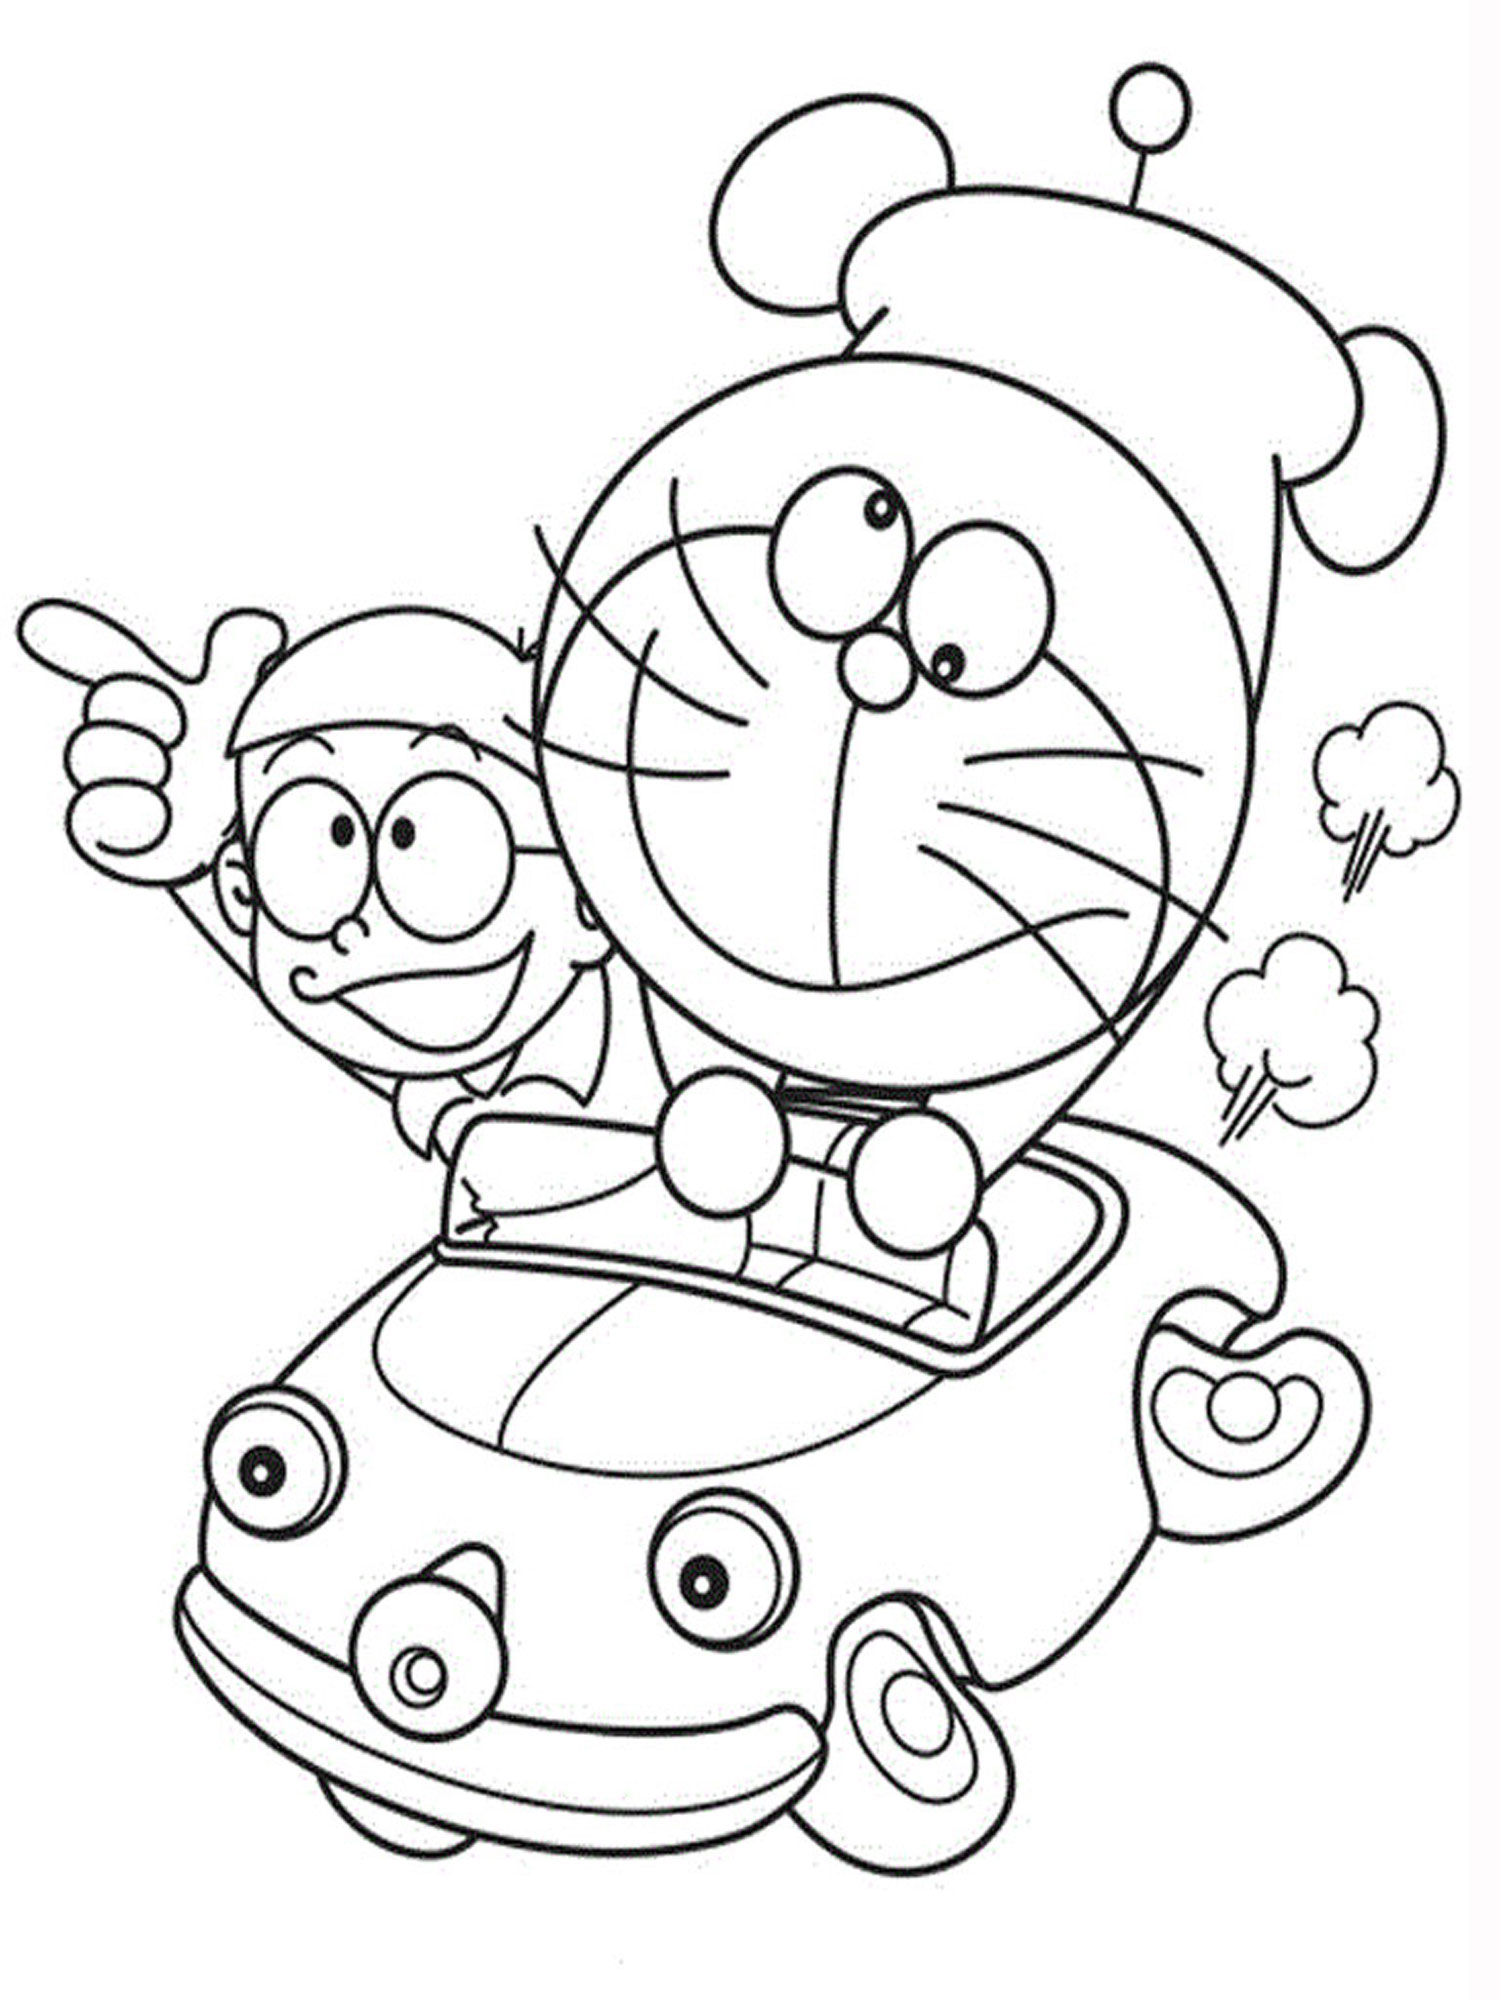 hình ảnh của doraemon và nobita